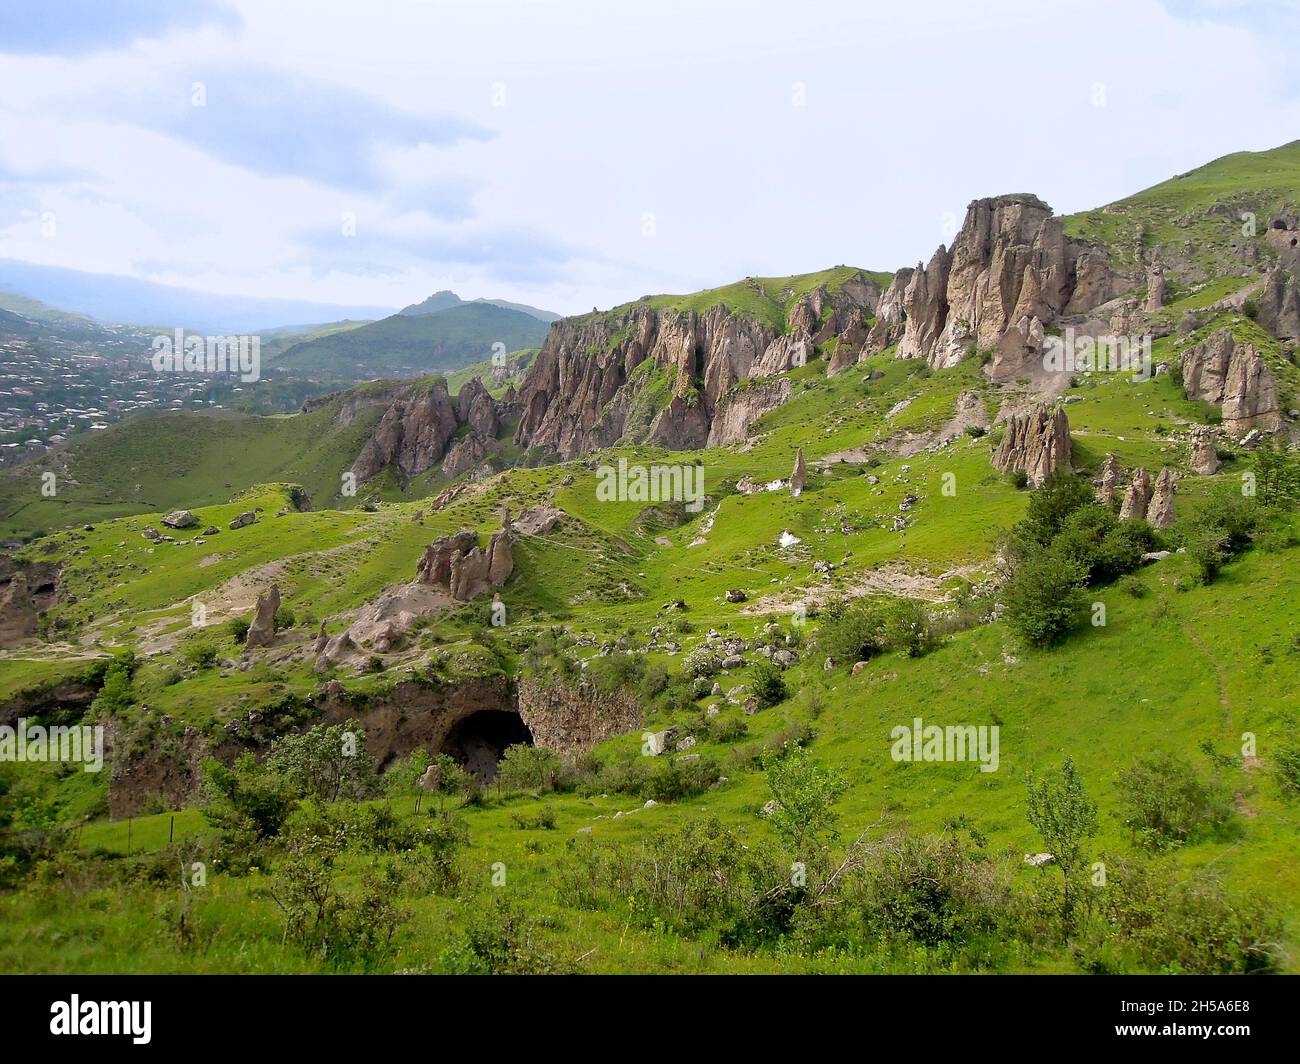 Paisaje de extrañas rocas alrededor de Goris, Armenia, parte del llamado Bosque de Piedra, famoso parque arqueológico y geológico. Algunas formaciones rocosas Foto de stock